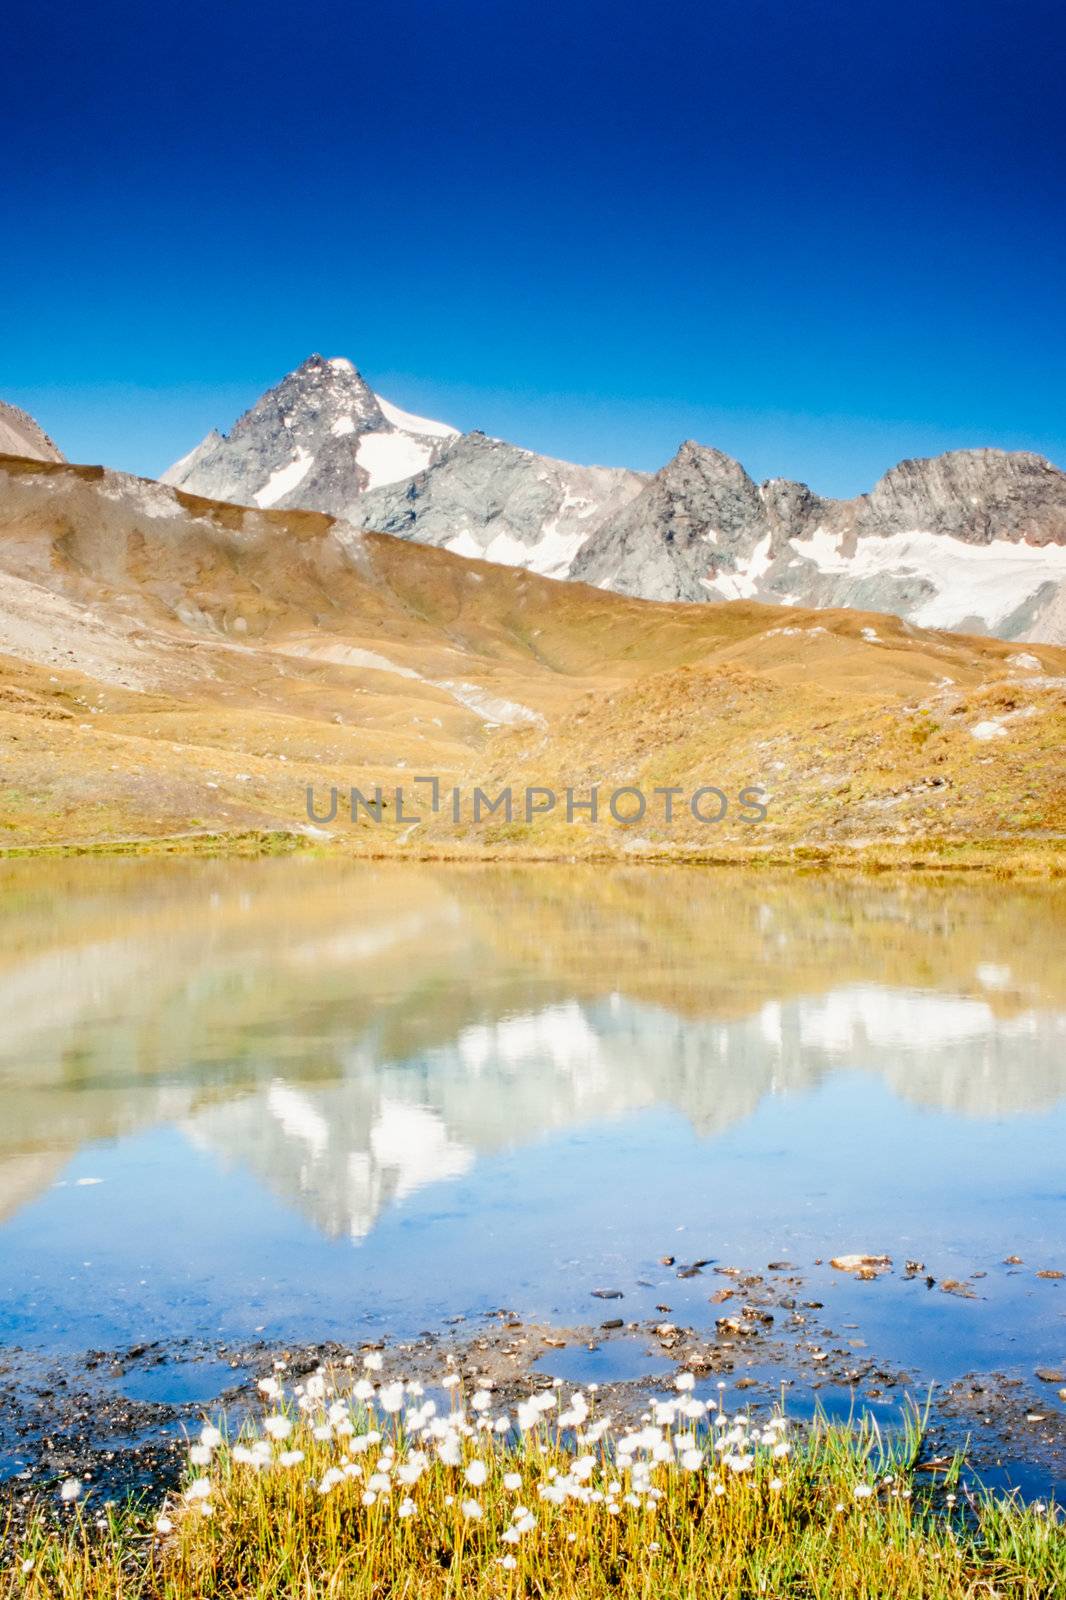 Grossglockner in Austria mirrored on alpine pond by PiLens